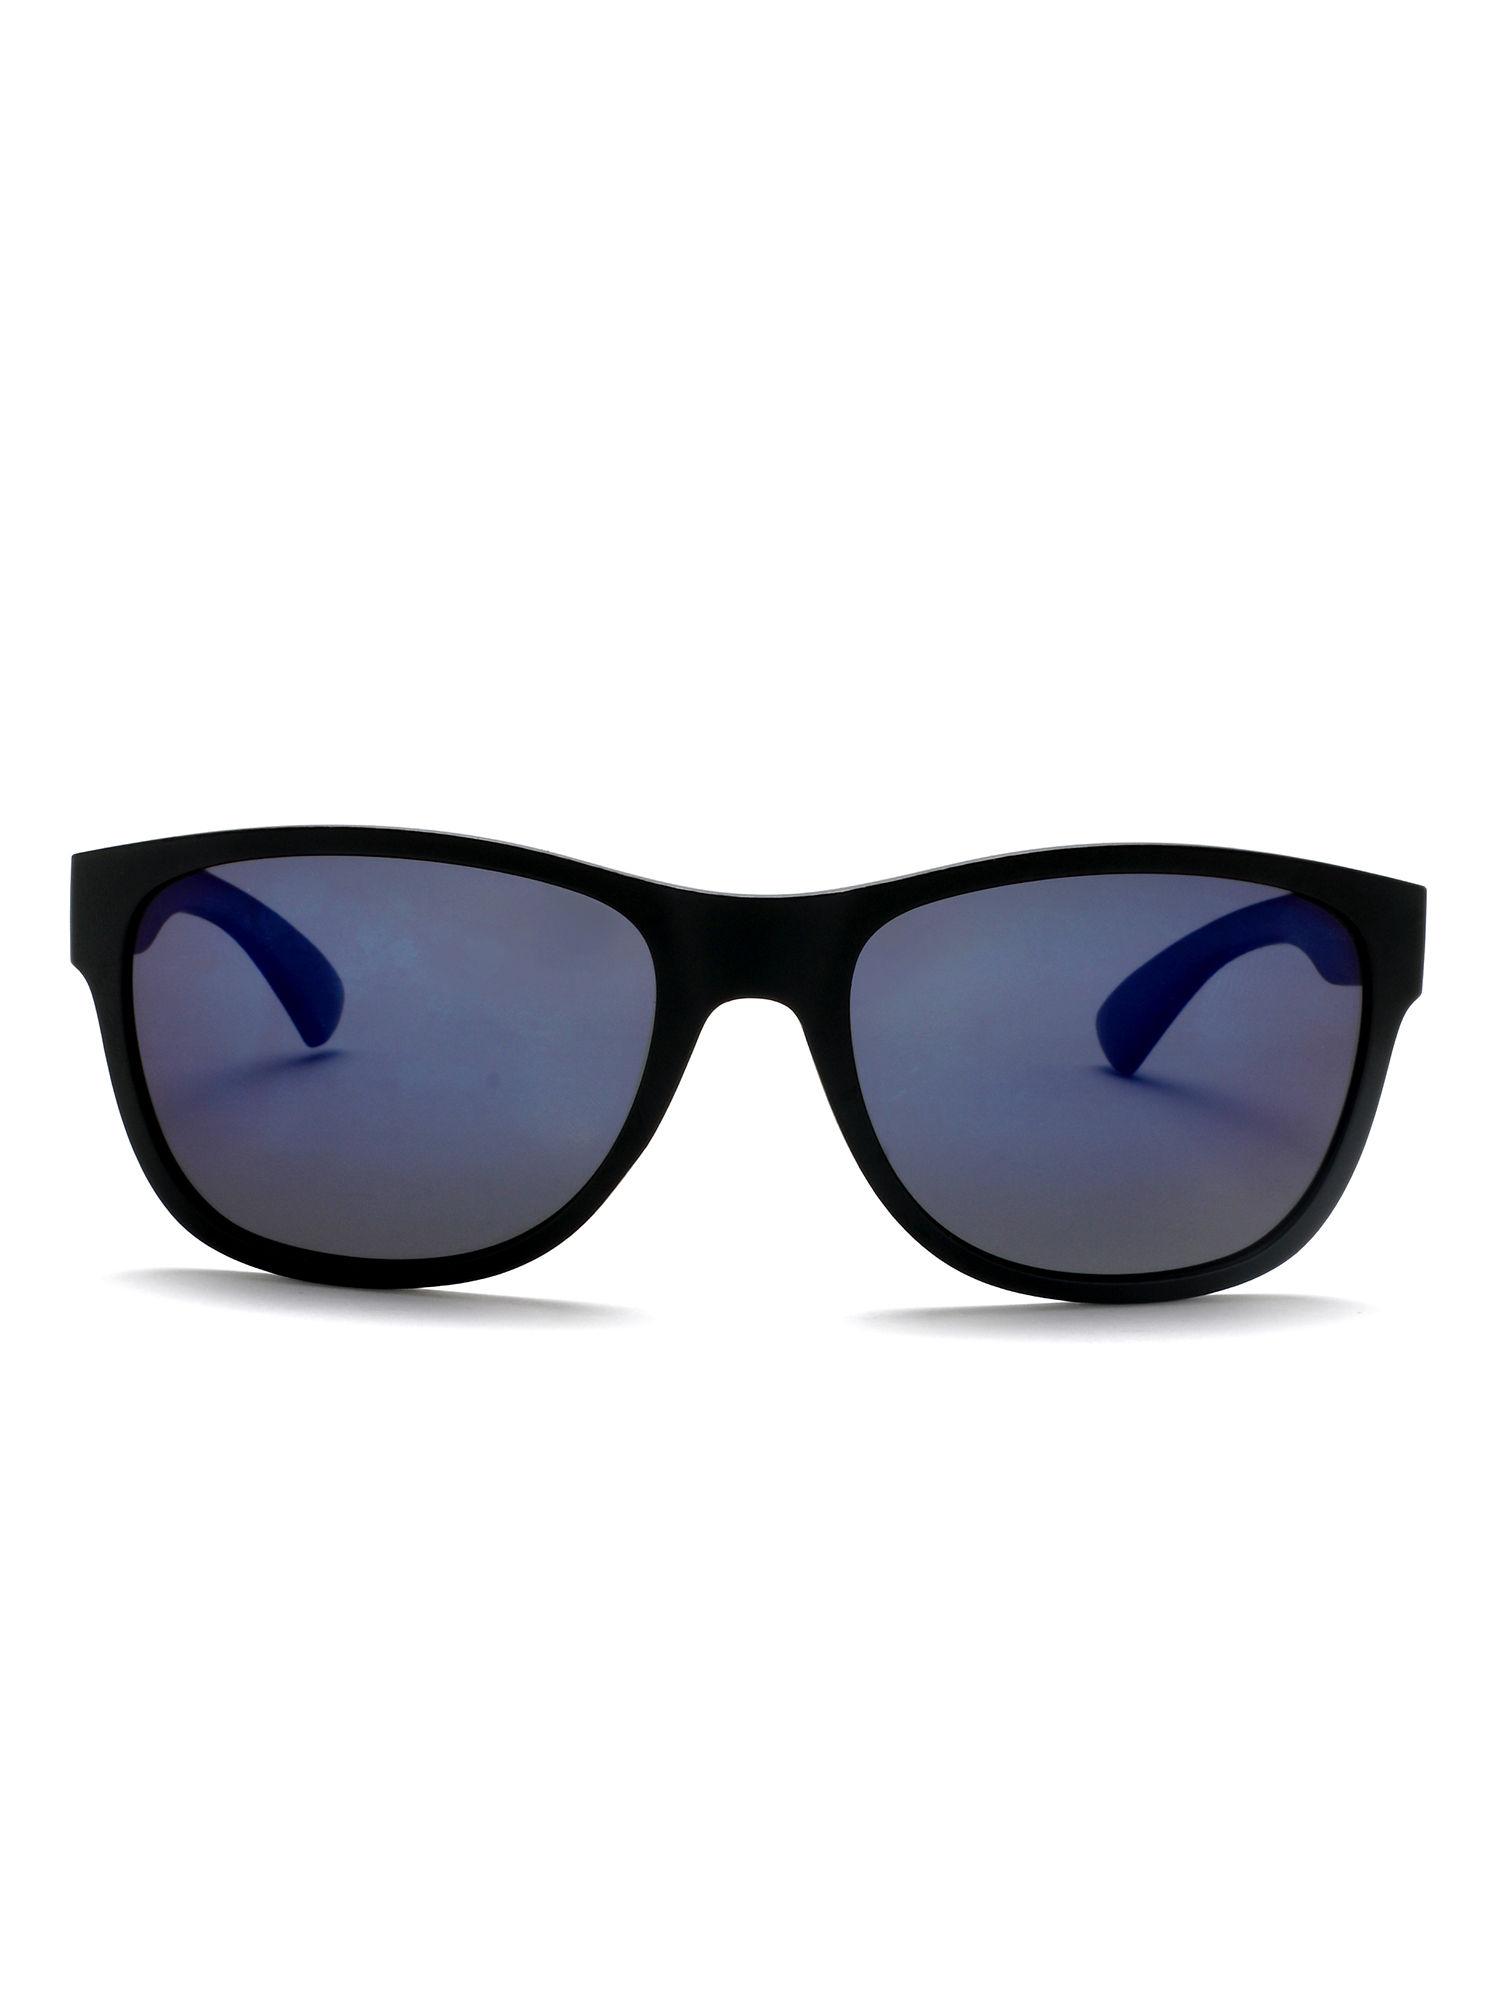 Blue Lens Wayfarer UV Protected Sunglass Full Rim Black Frame With Mirrored